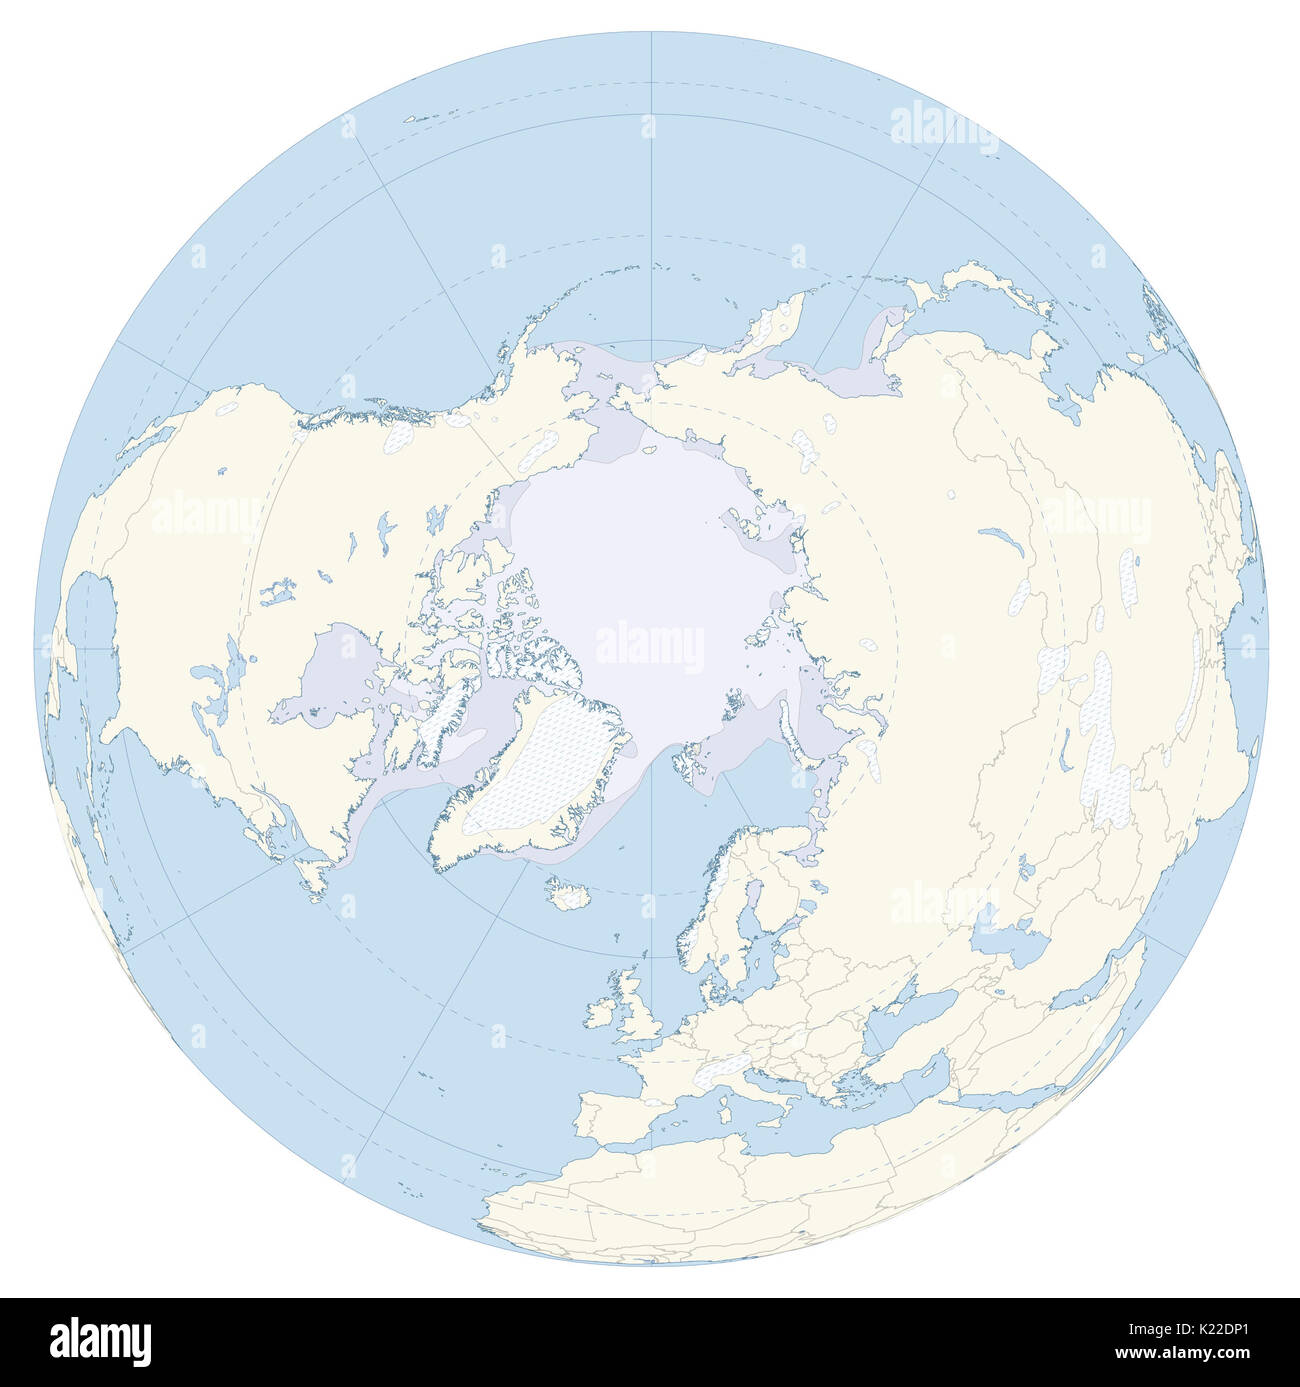 Riesige Region innerhalb des Polarkreises gelegen, einschließlich dem Arktischen Ozean und dem Land, es grenzt. Stockfoto